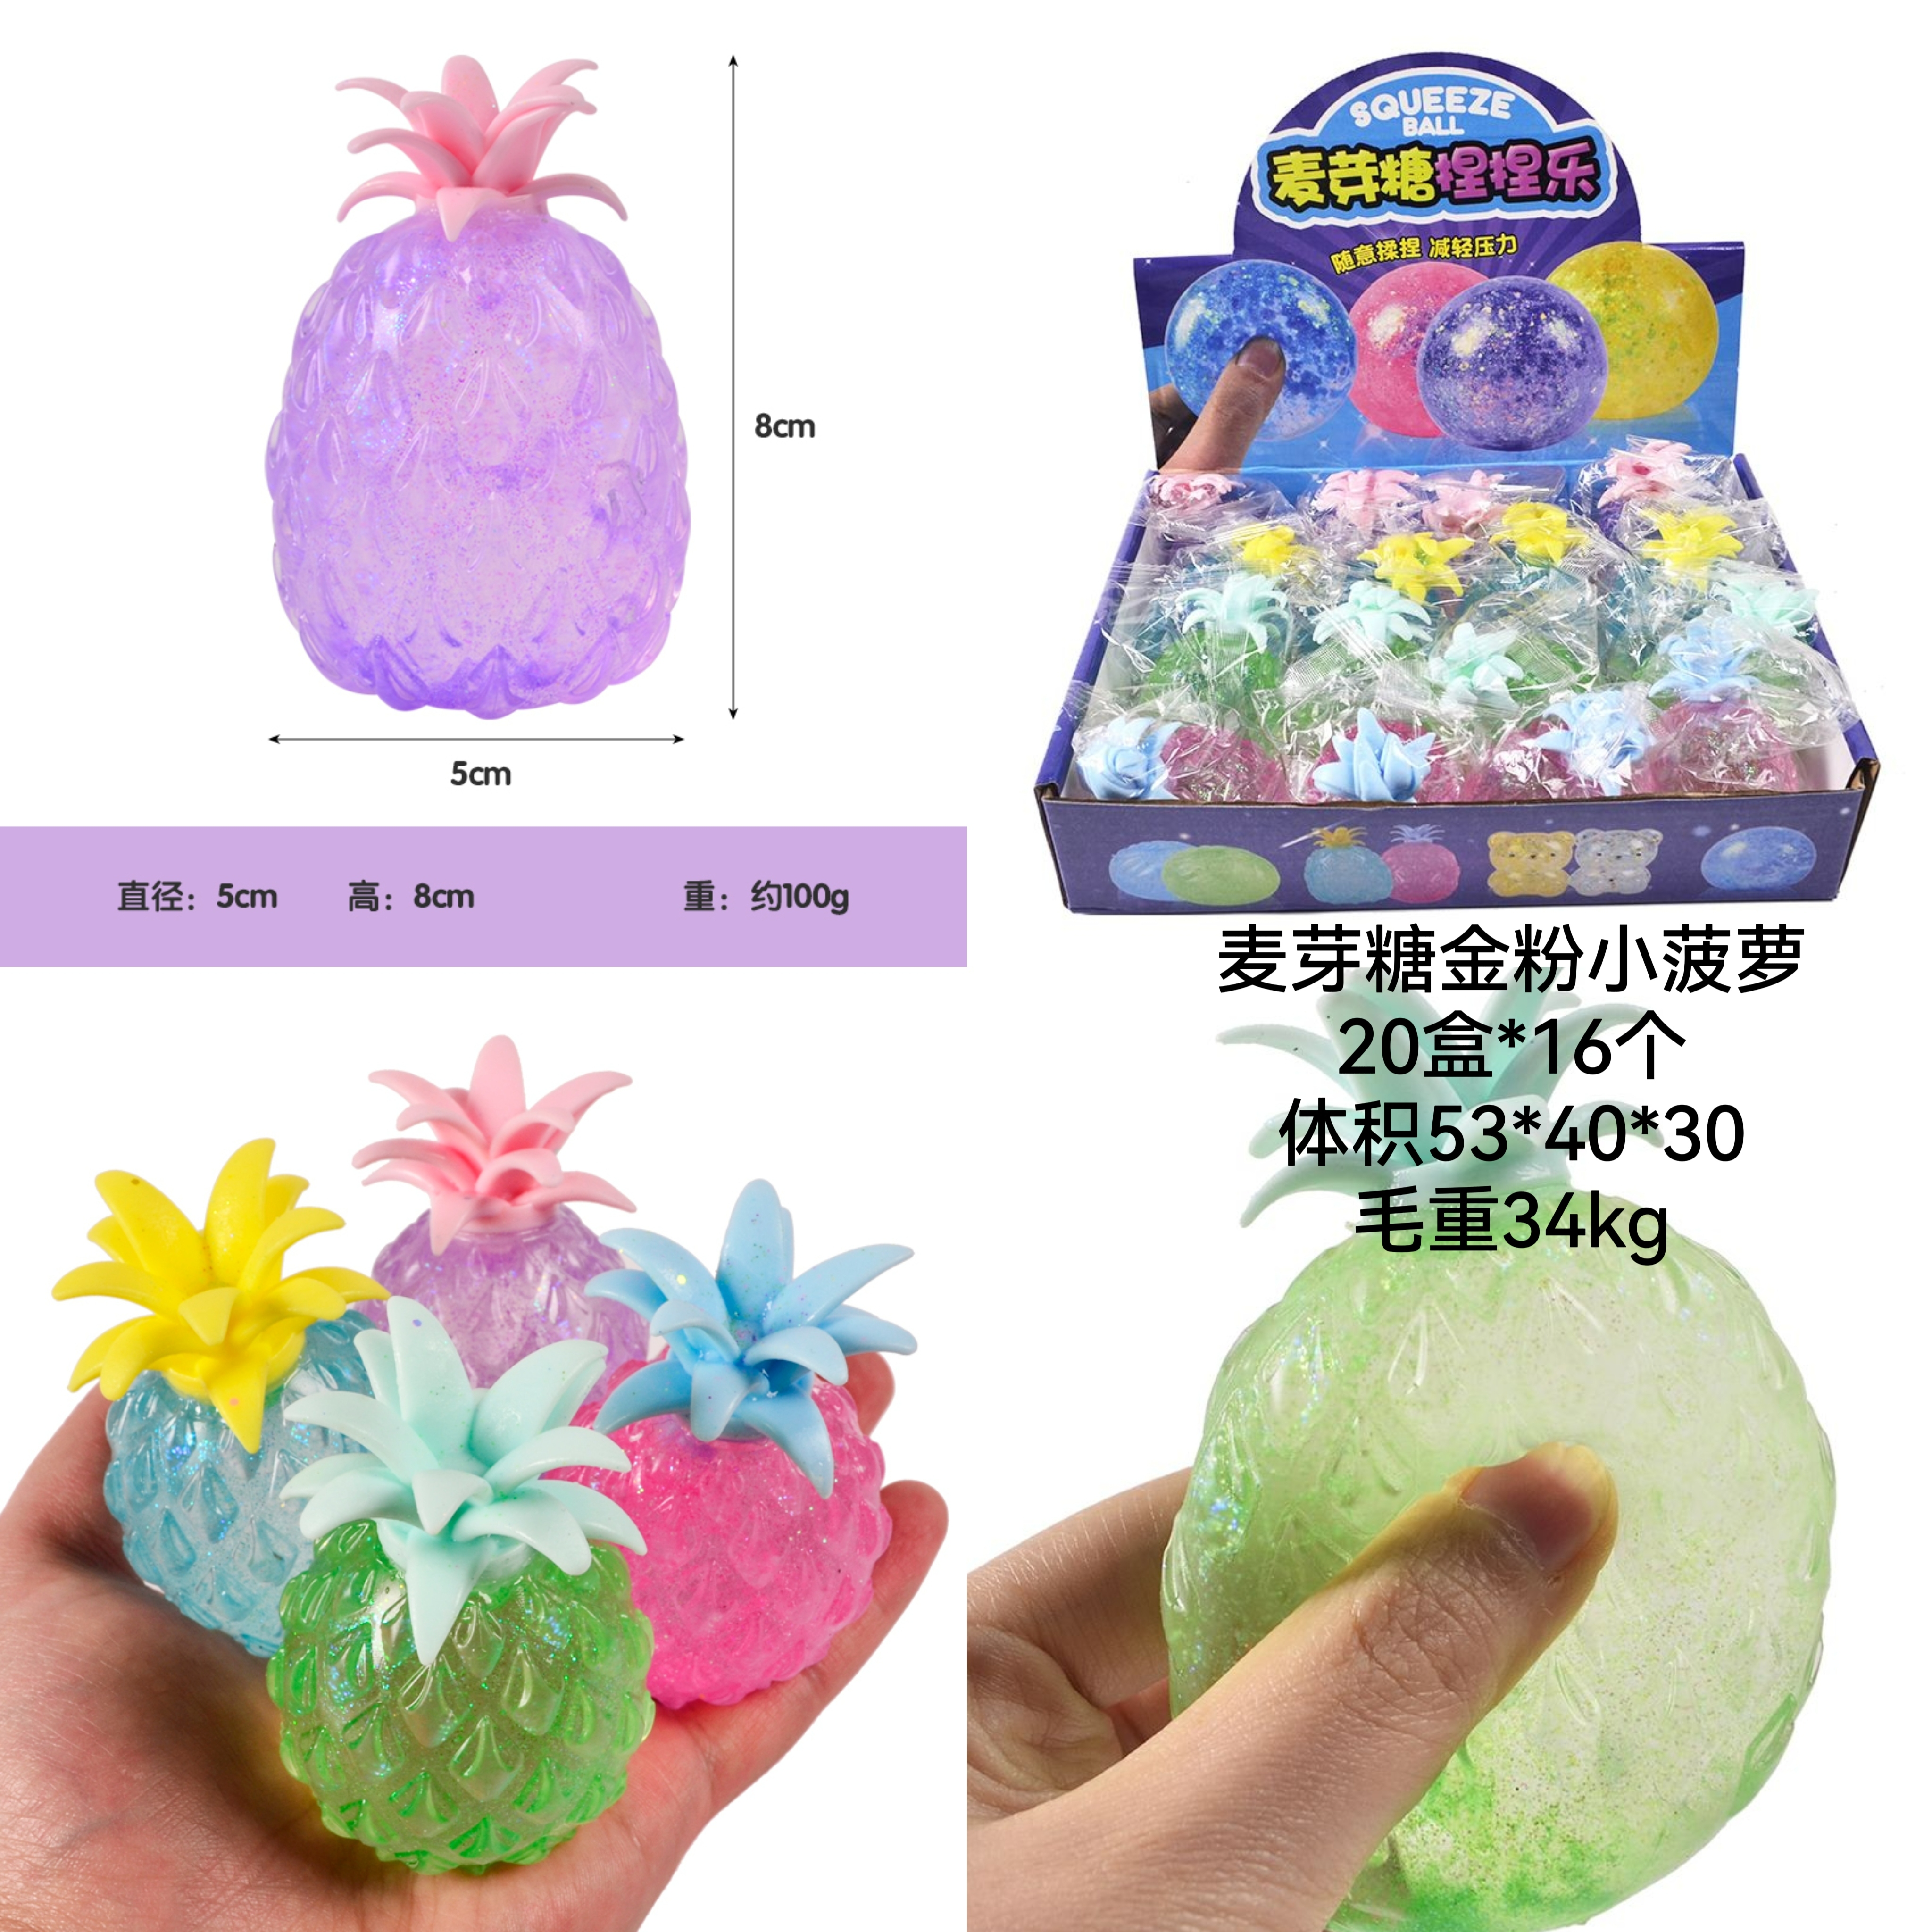 欣飞塑胶玩具/TPR玩具/麦芽糖细节图